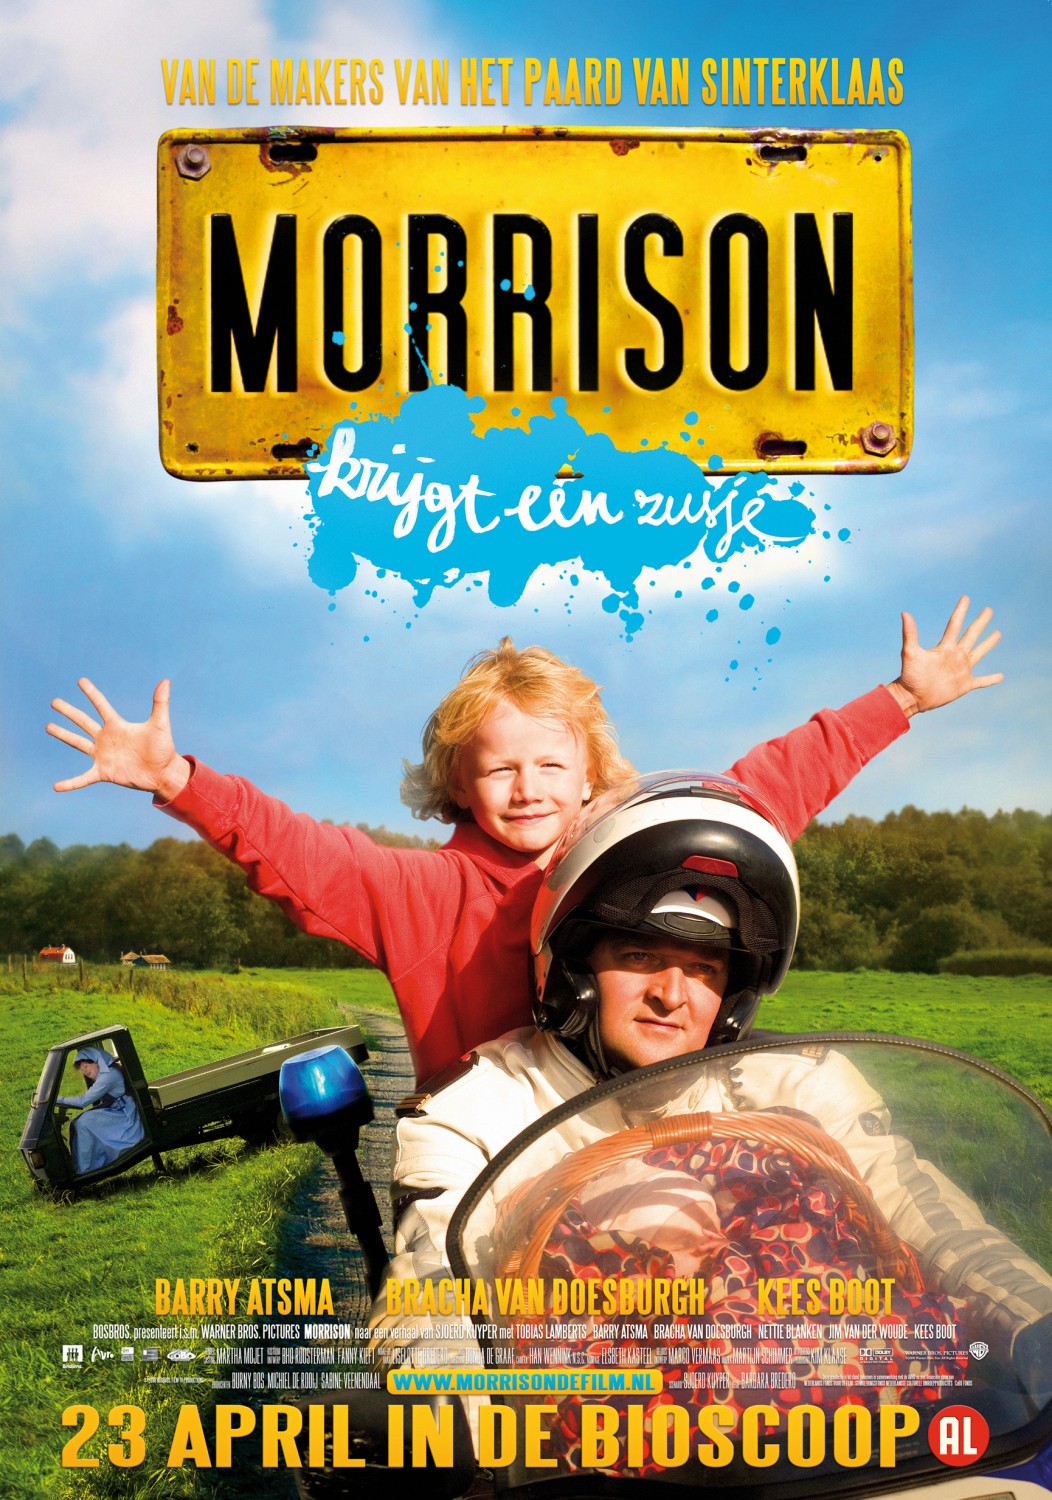 Extra Large Movie Poster Image for Morrison krijgt een zusje 